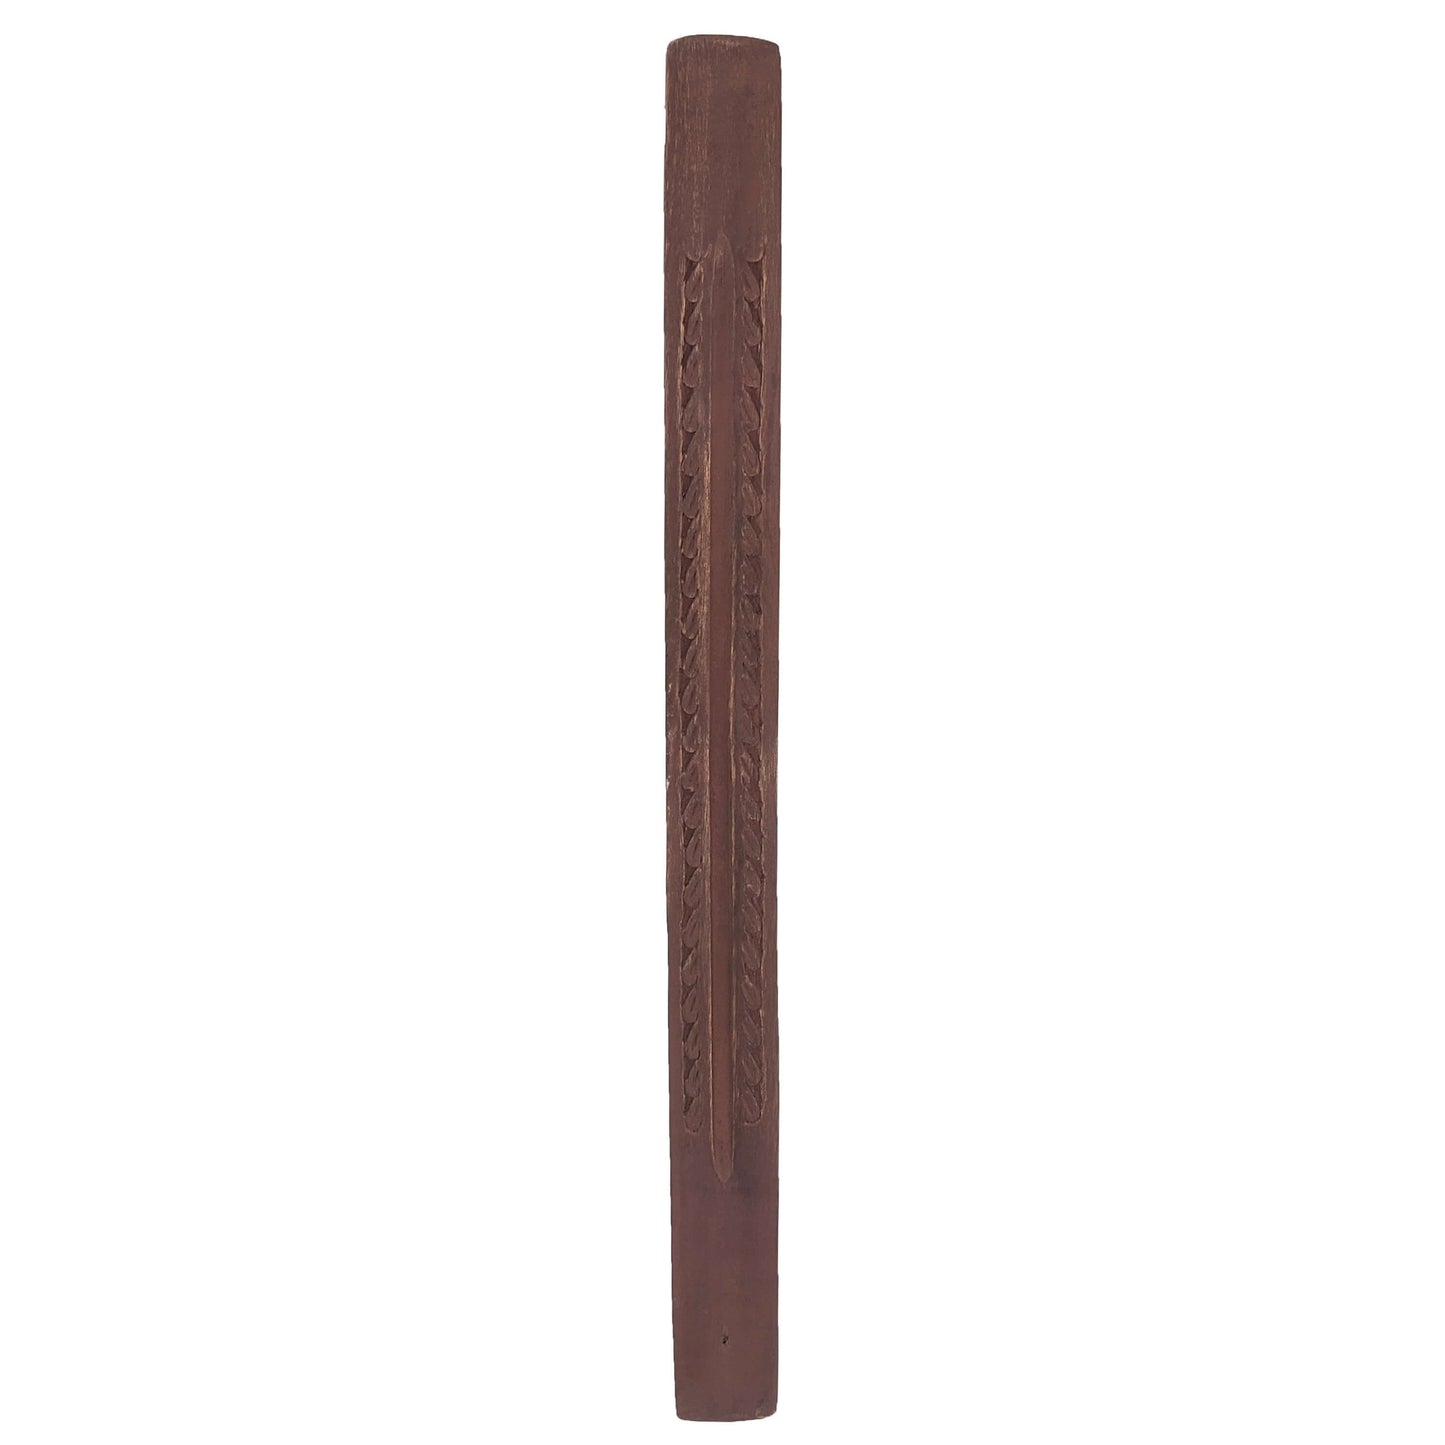 Jumbo Wood Incense Burner & Ash Catcher, Carved Design, 18"